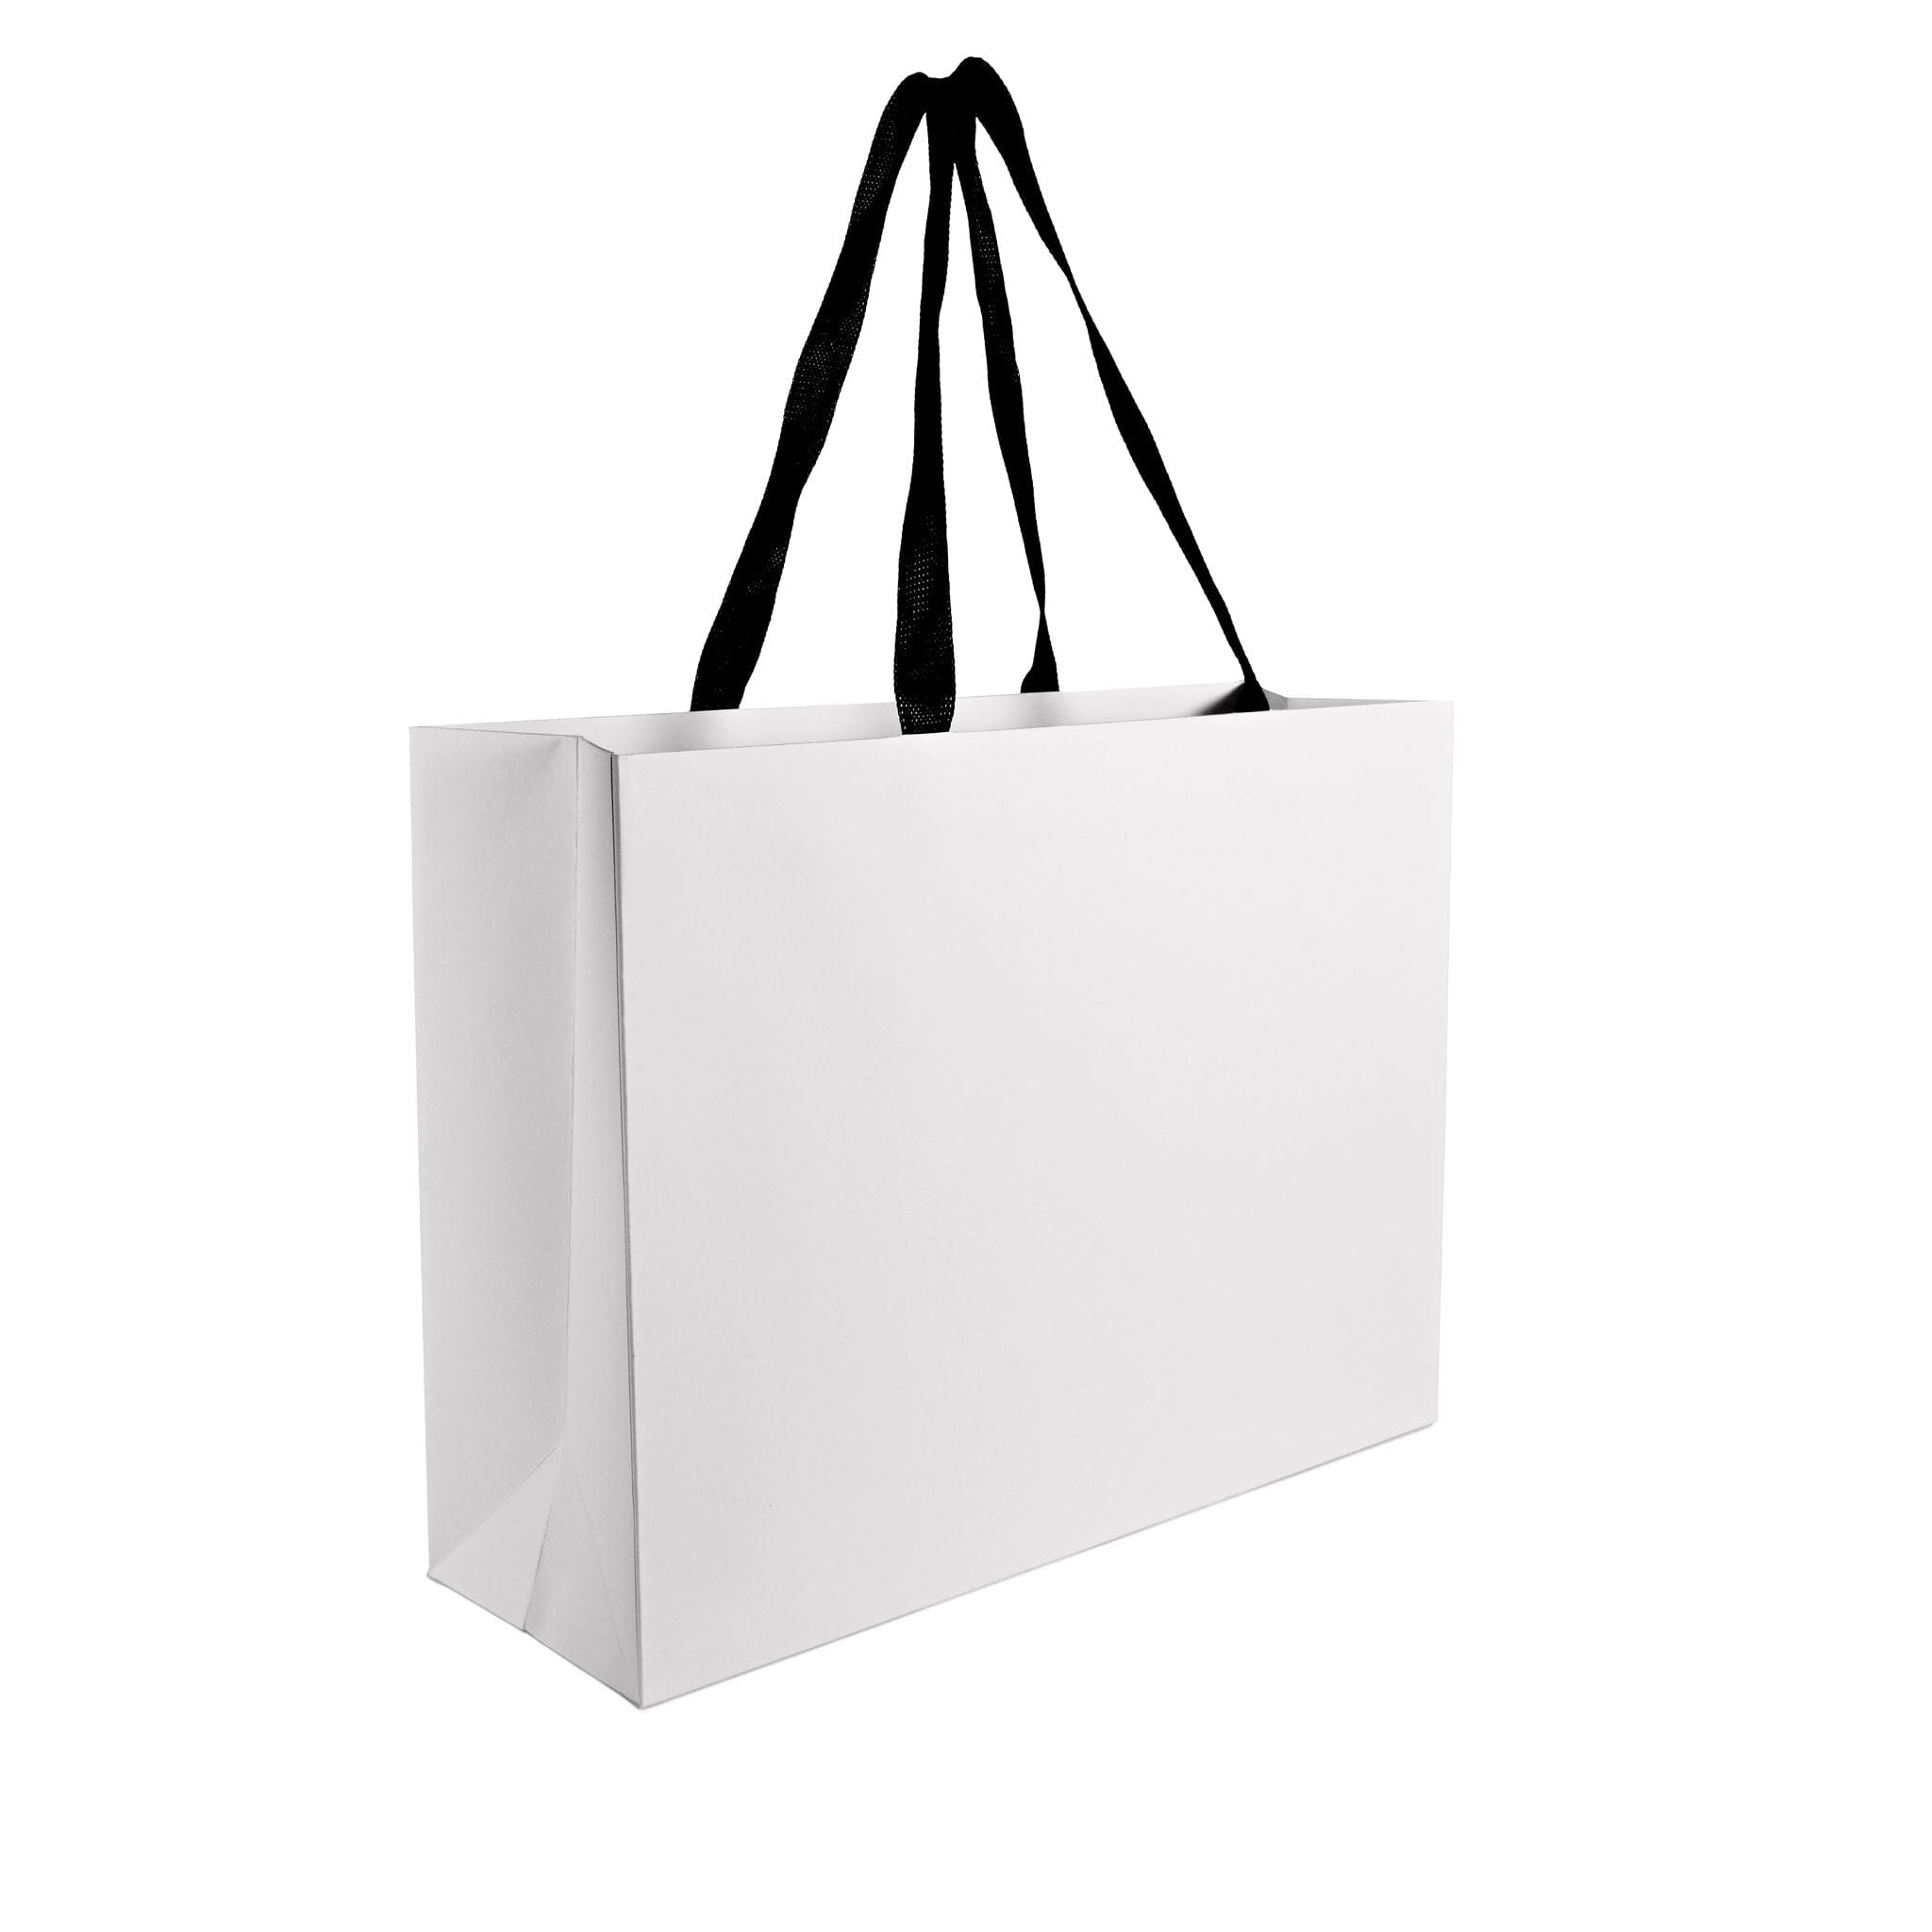 Free Die Cut Kraft Paper Bag Mockup on Behance